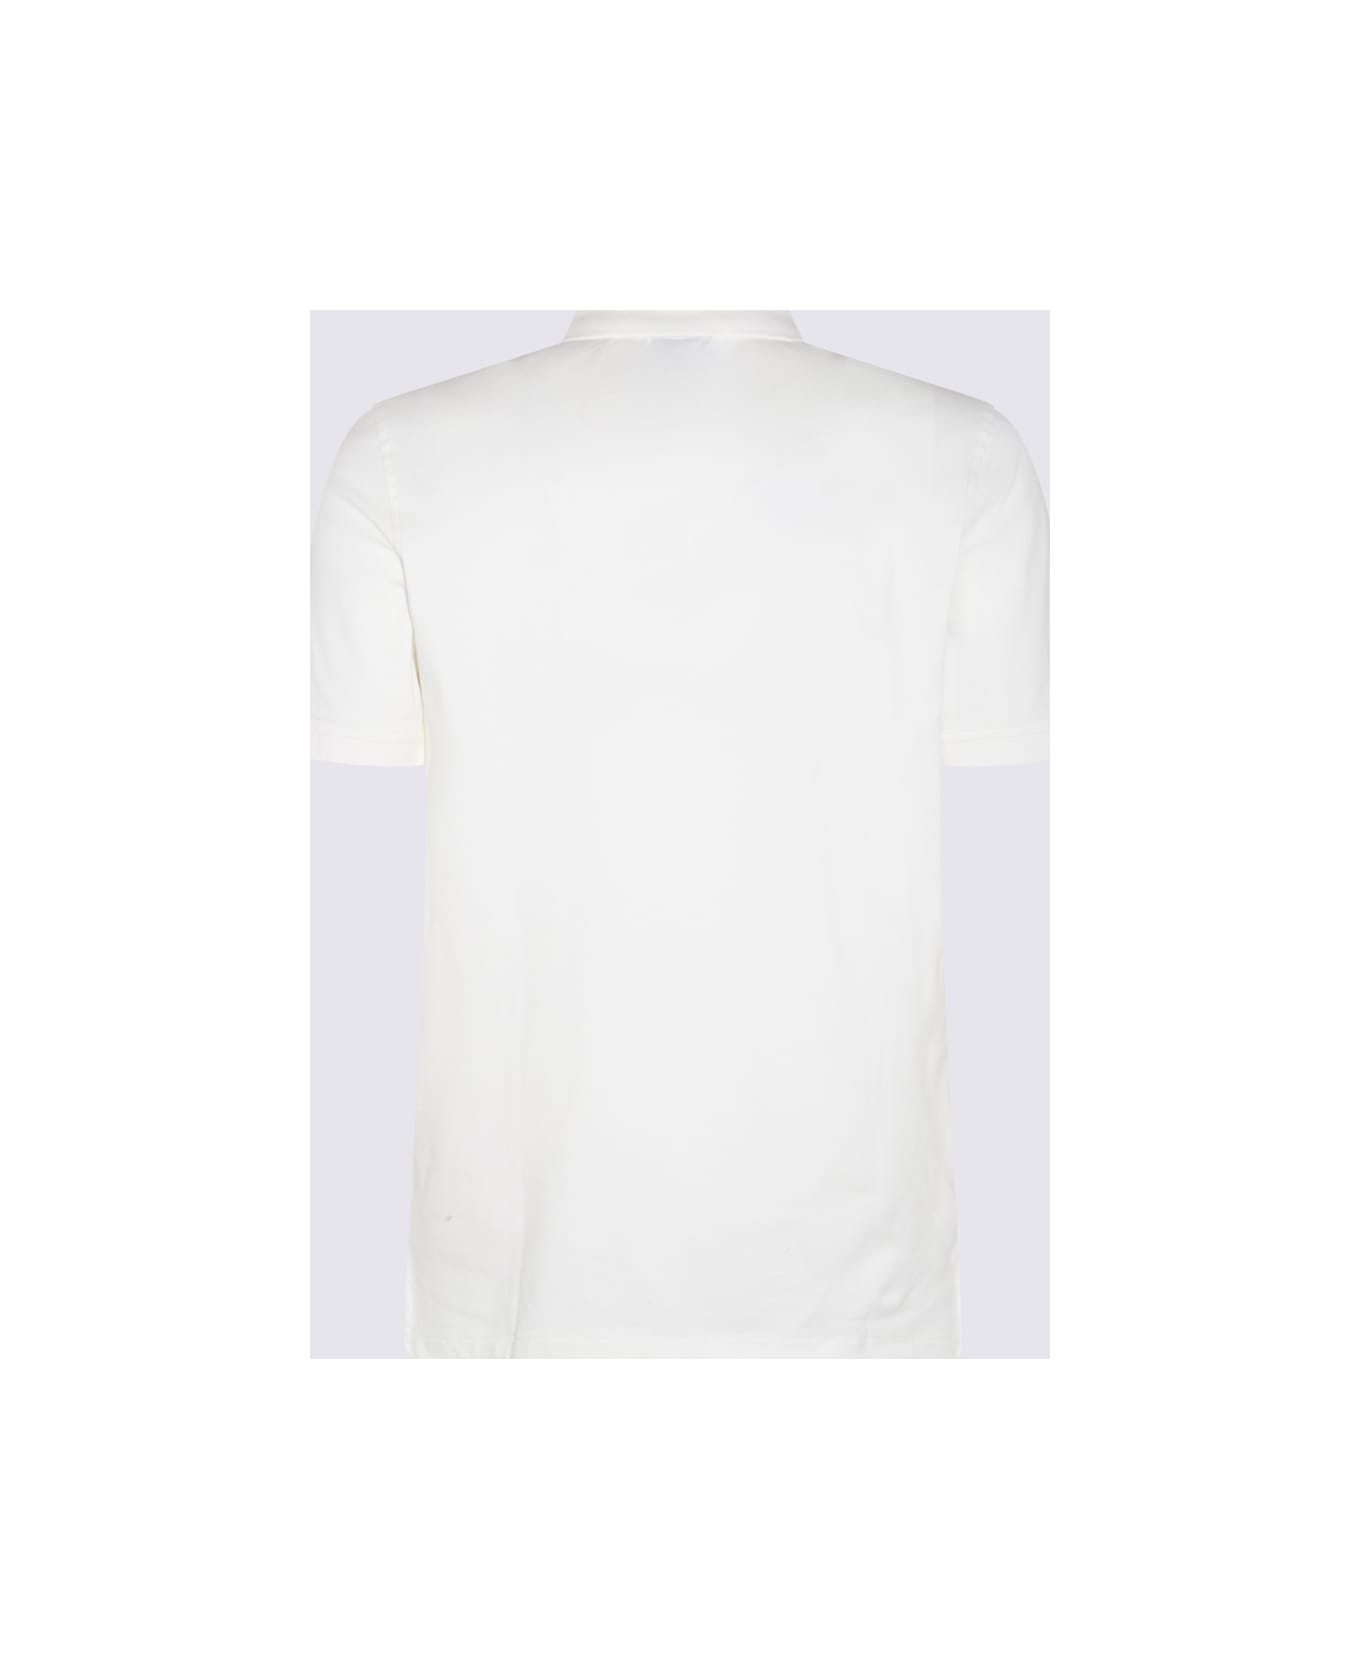 Paul Smith White Cotton Polo Shirt - White